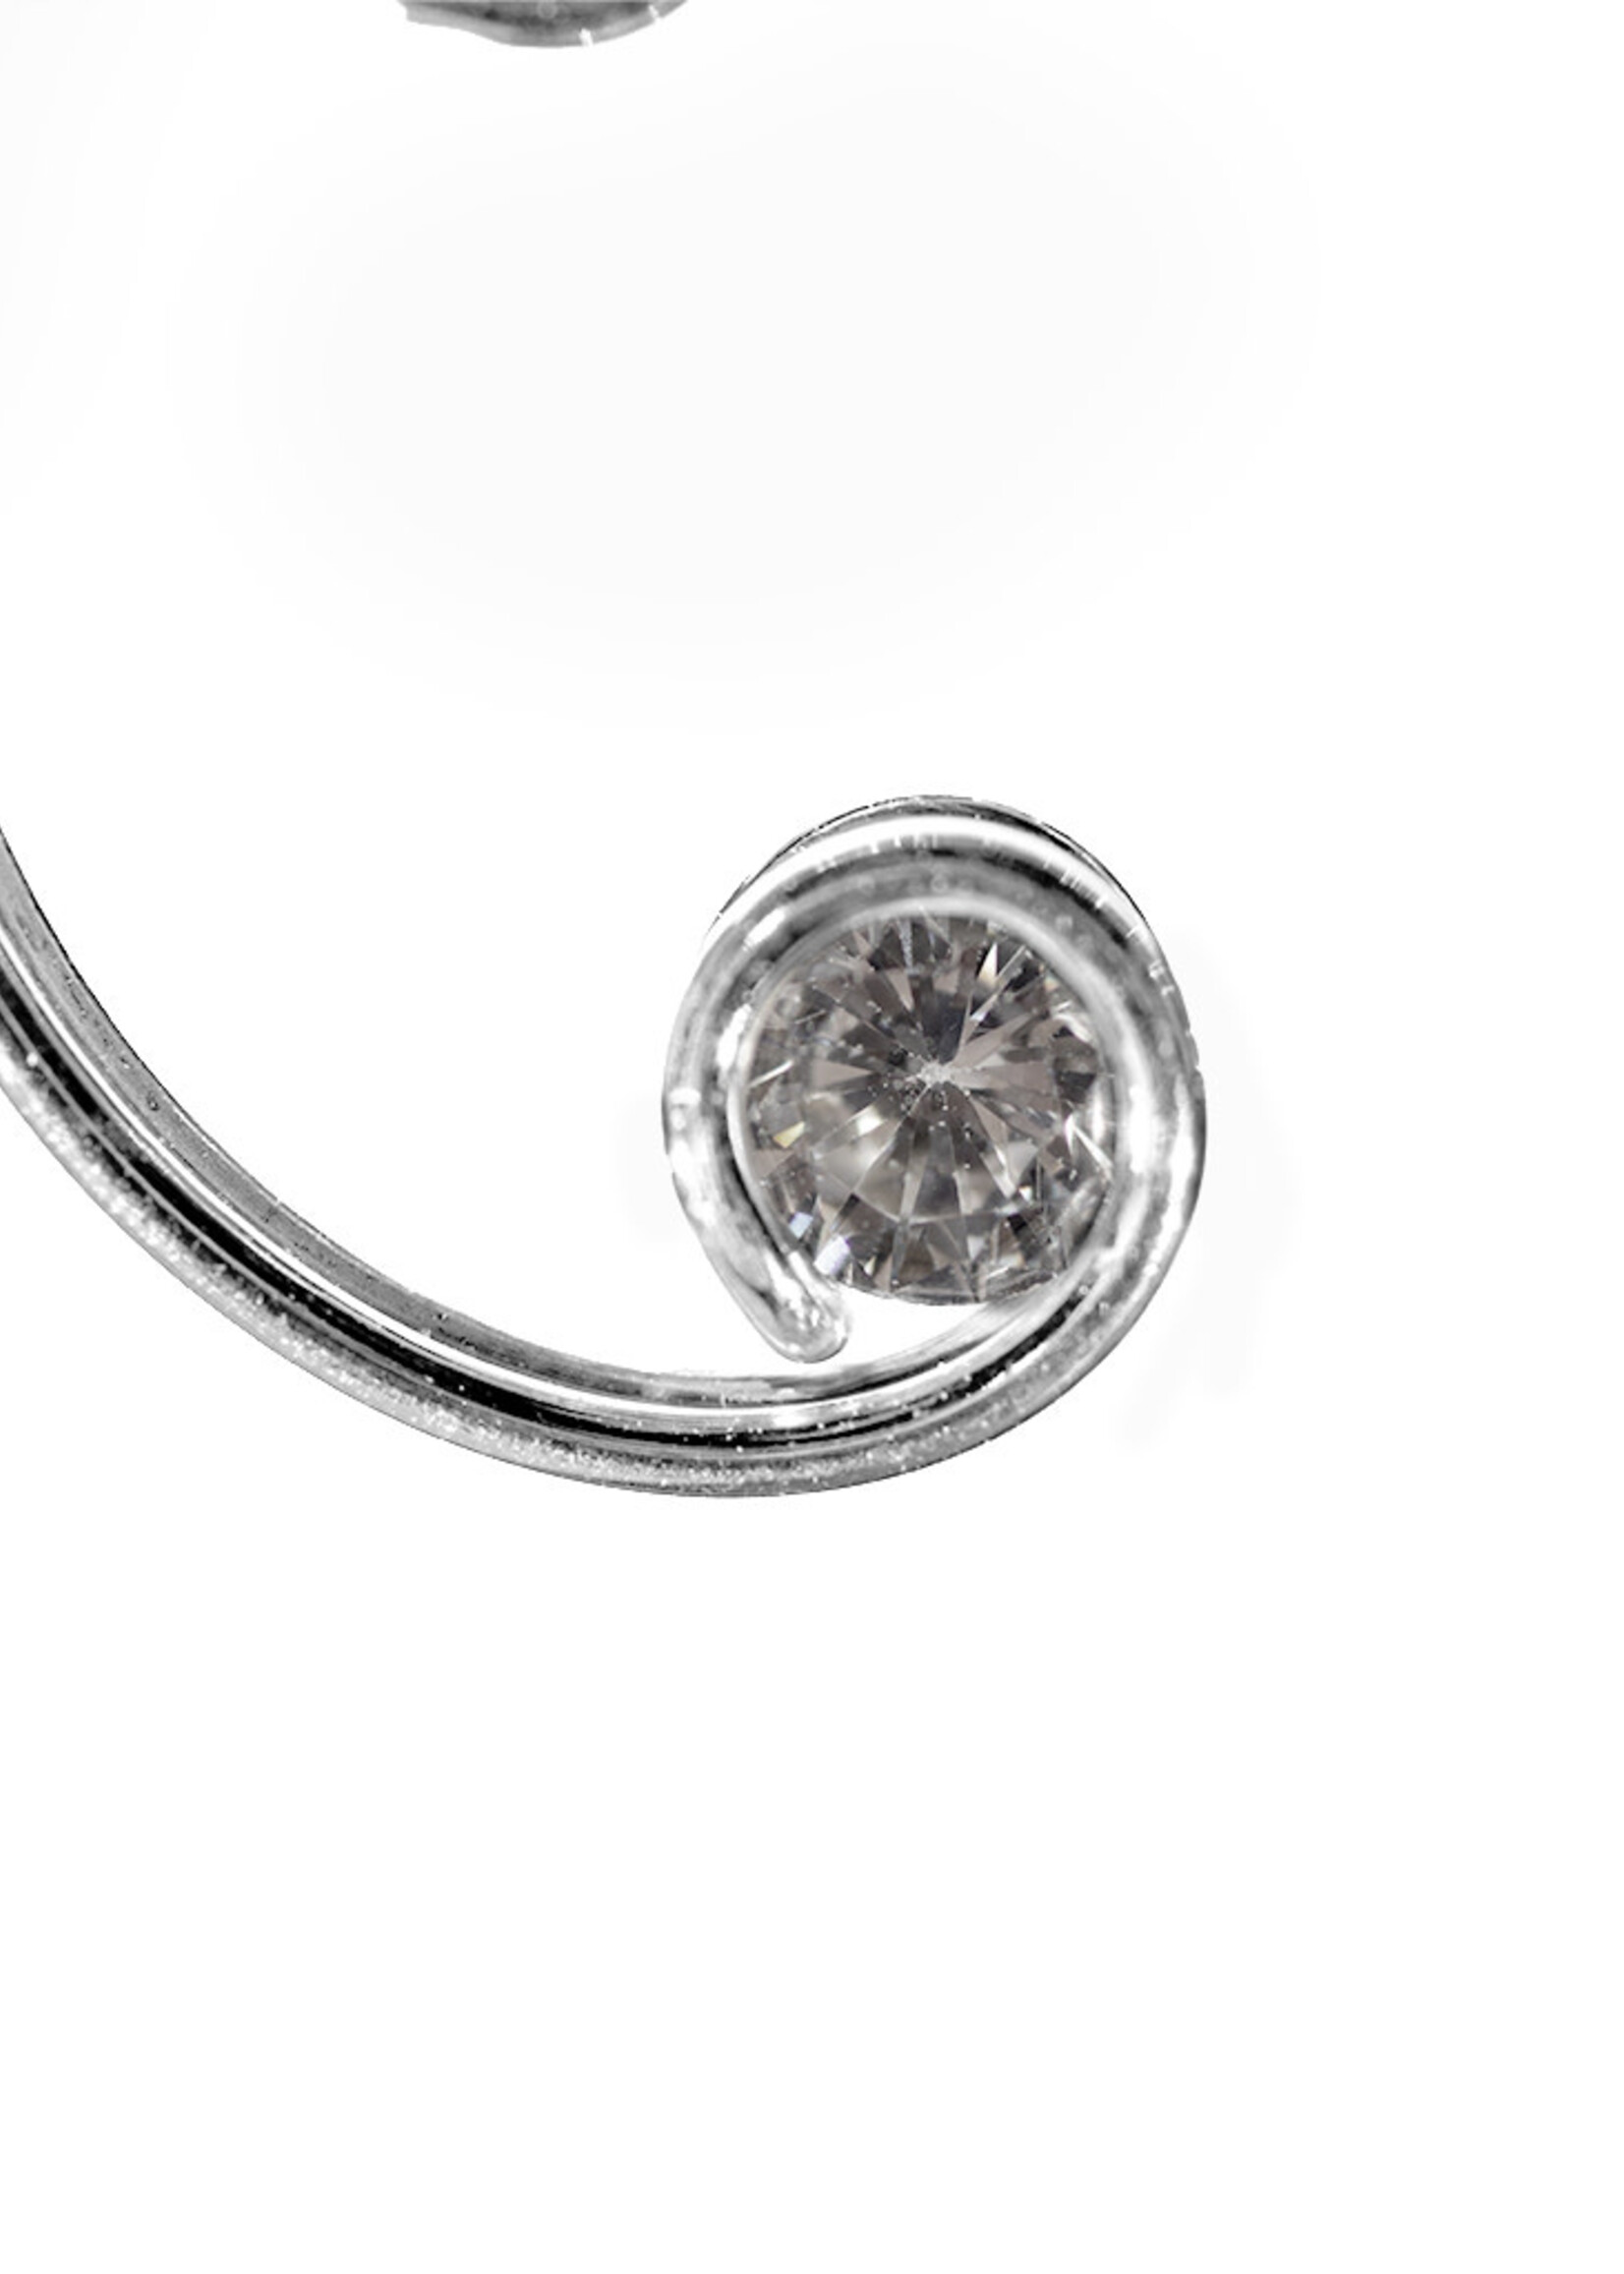 Mark Steel Jewelry Swirl with CZ Earrings